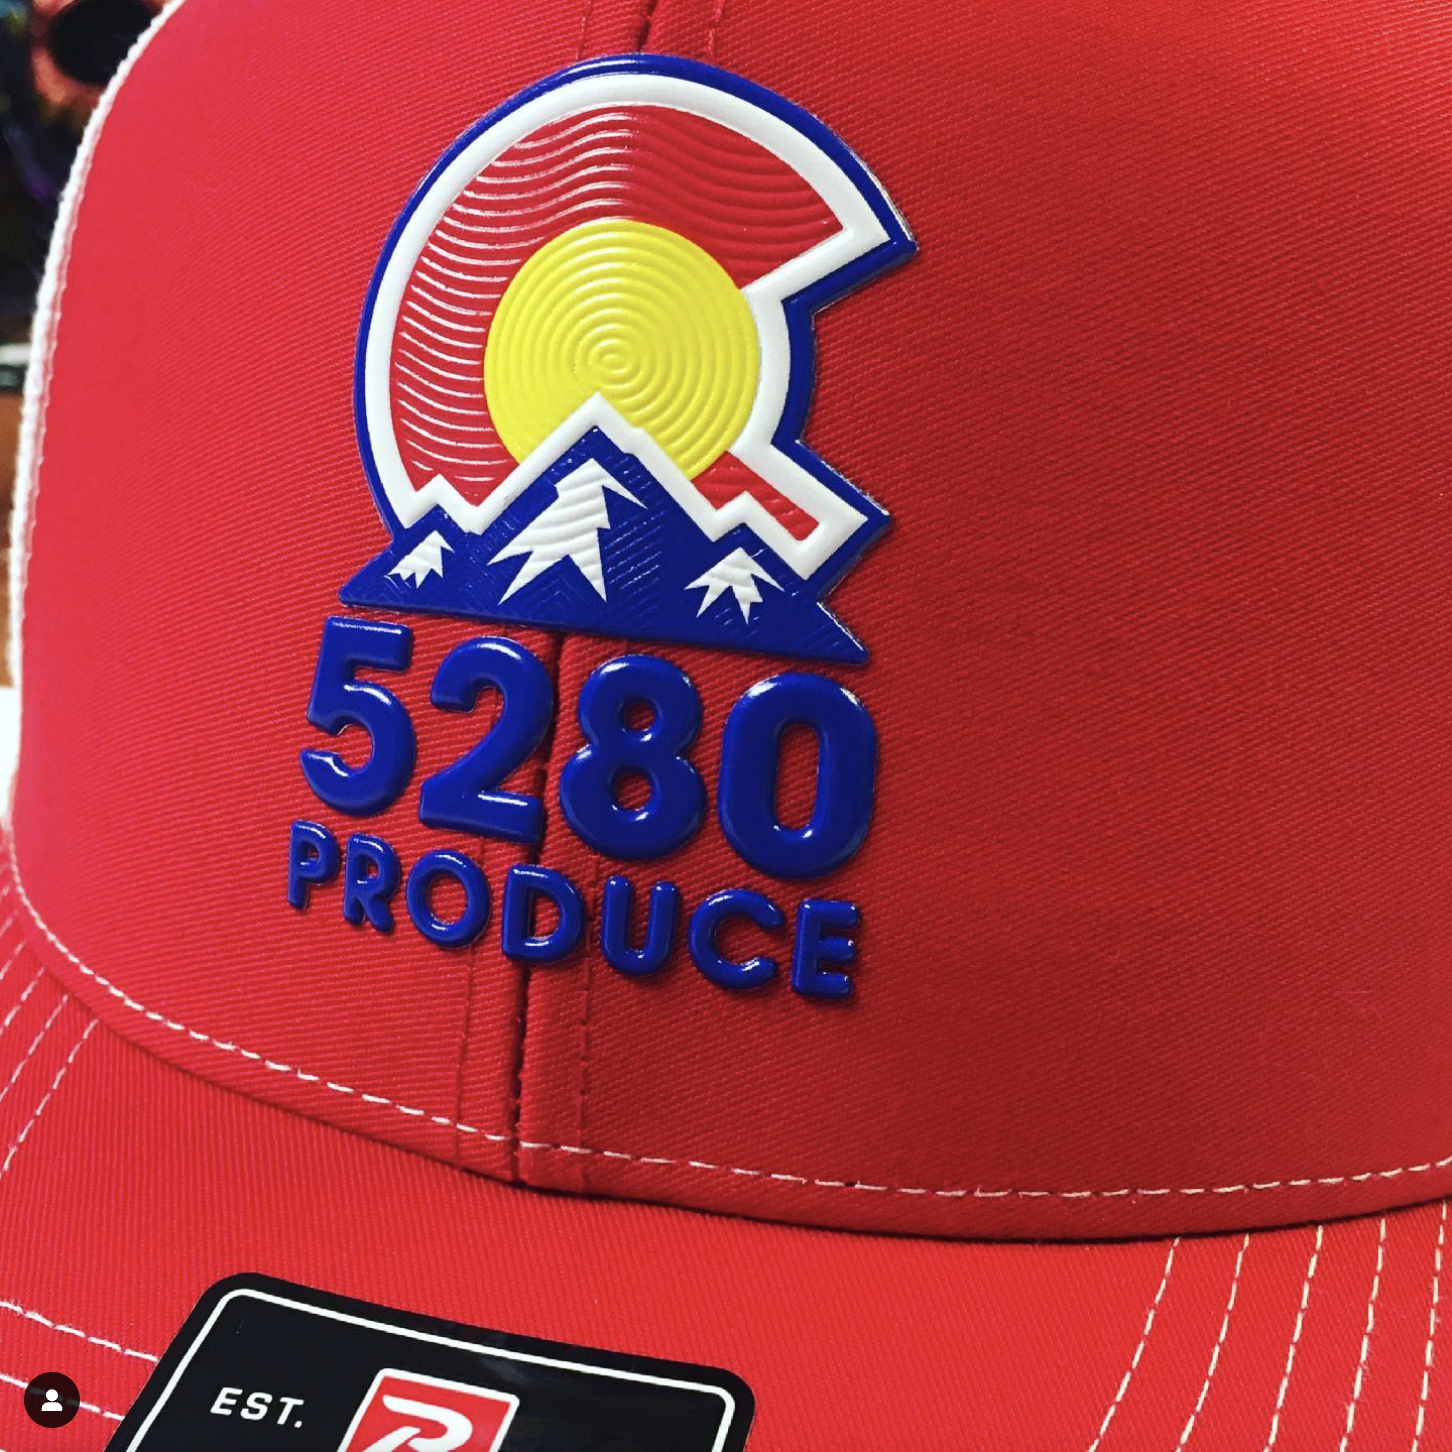 5280 Produce Hats